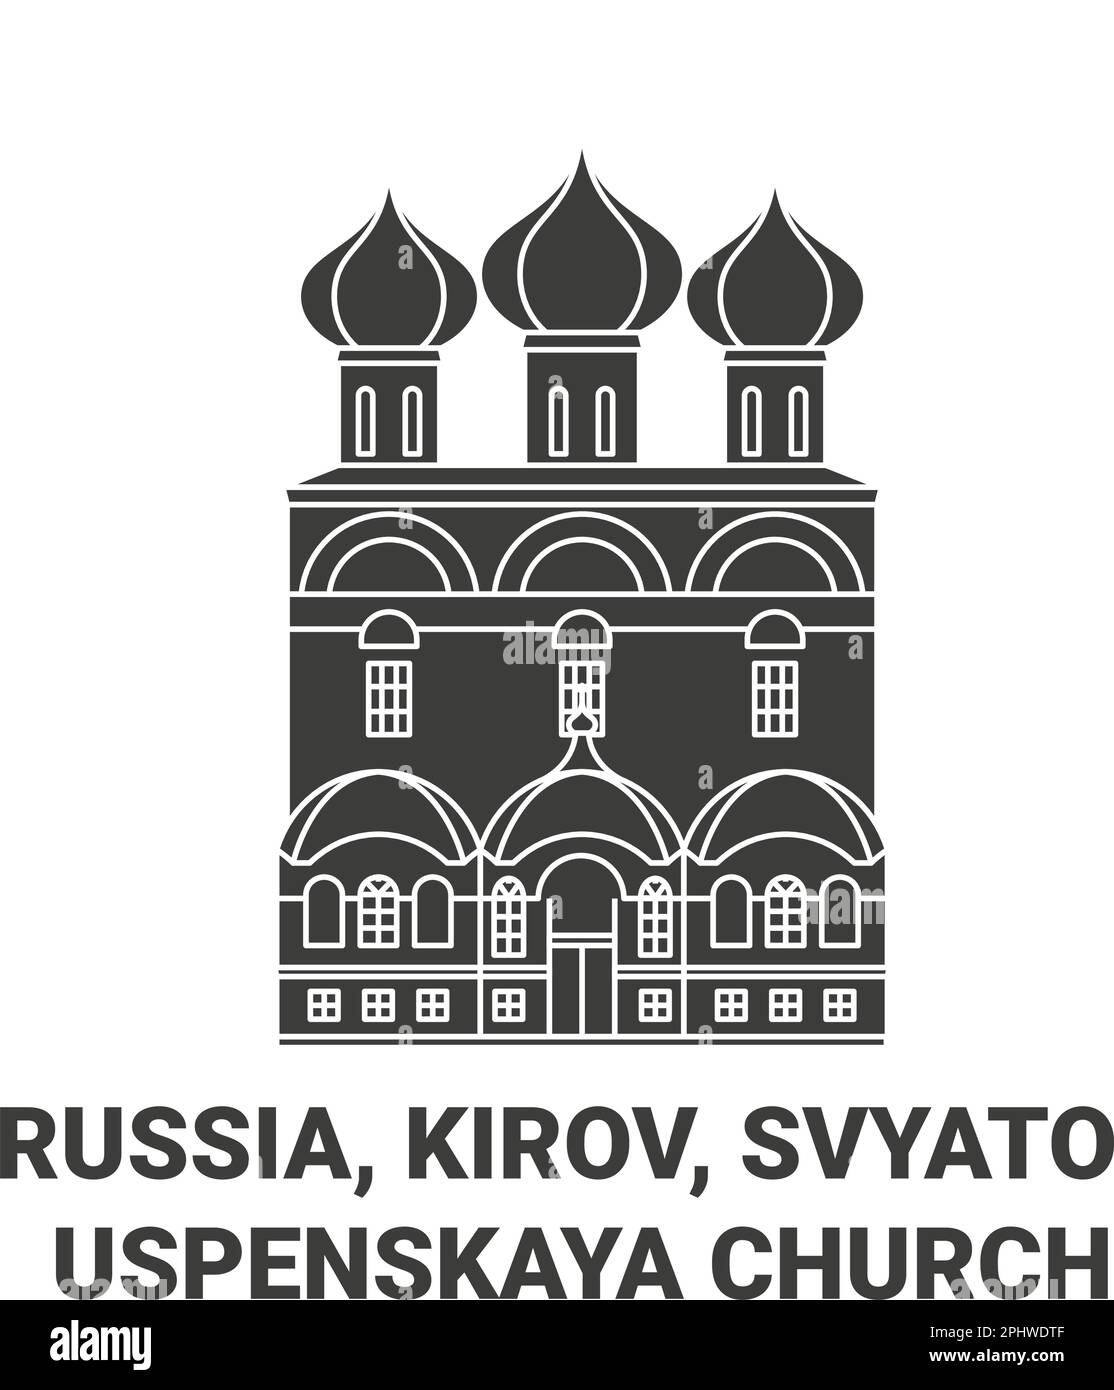 Russia, Kirov, Svyato , Uspenskaya Church travel landmark vector illustration Stock Vector